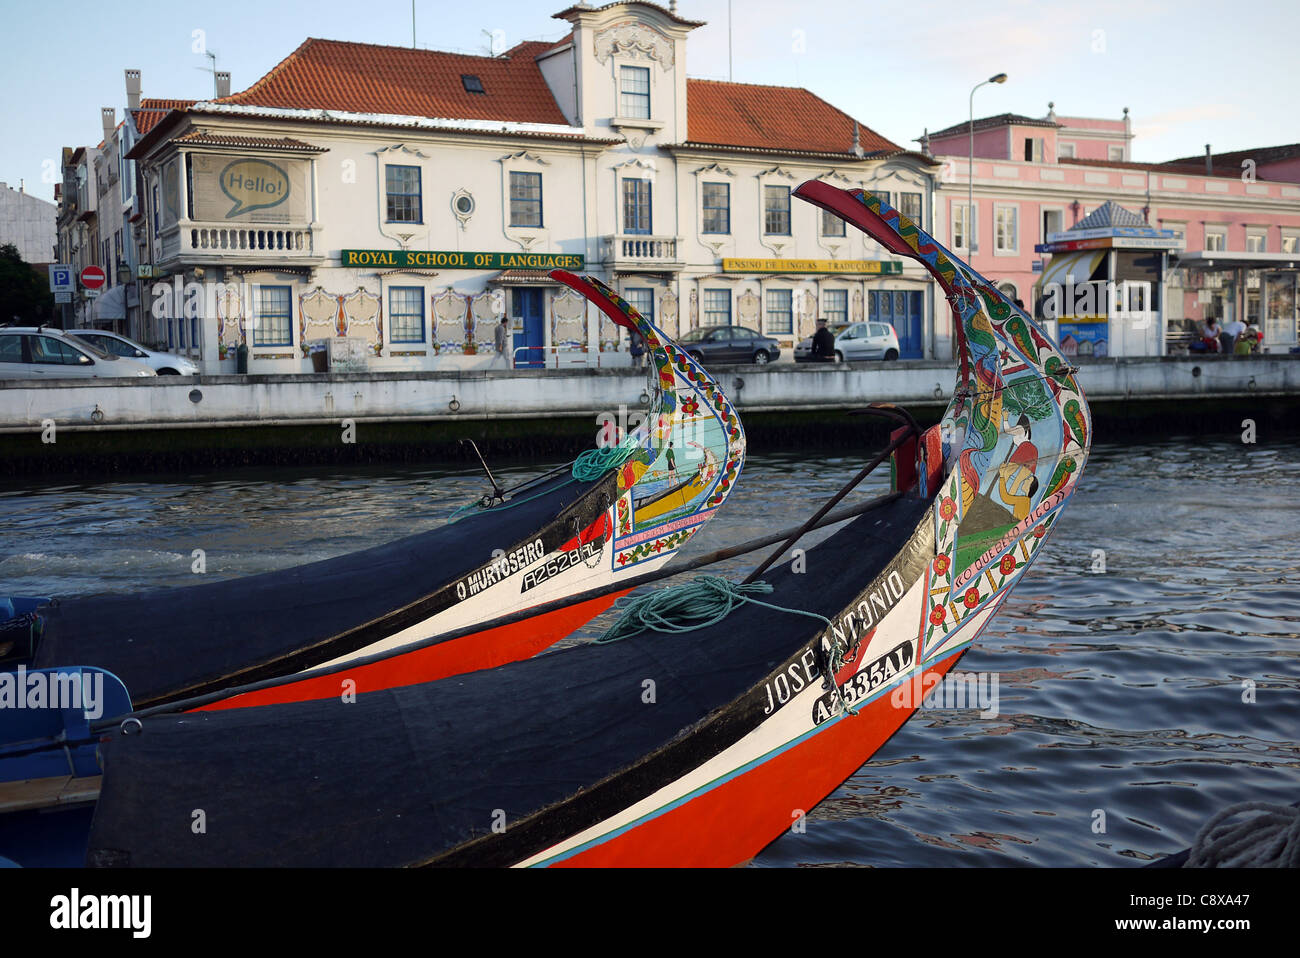 Décorées de proues Moliceiro (algues) des bateaux sur les canaux à Aveiro, 'la Venise du Portugal". Aujourd'hui utilisé pour des excursions touristiques. Banque D'Images